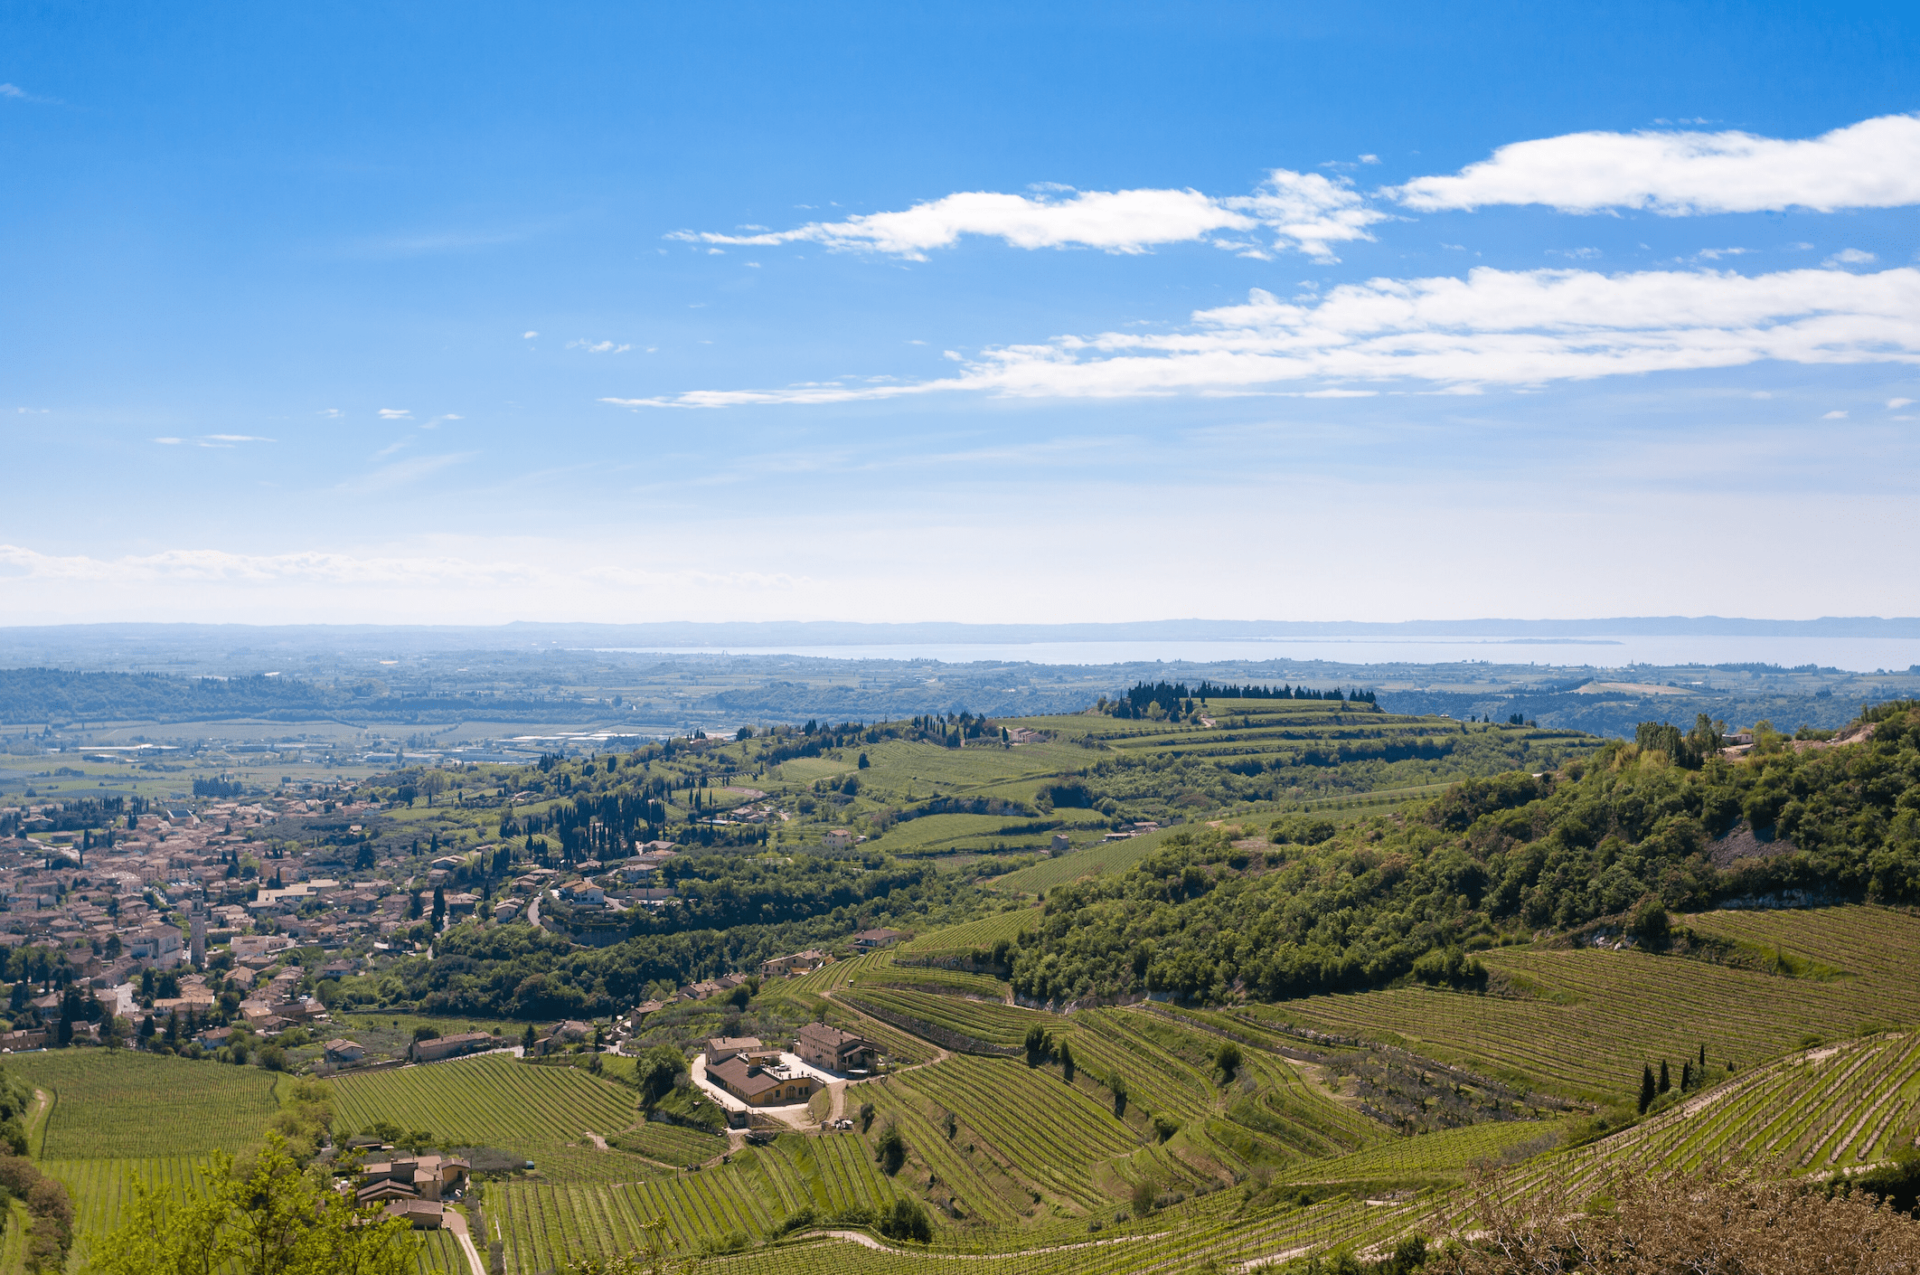 Weinlese in Verona: ein Erlebnis im Herzen der Tradition der Wein- und Ölherstellung